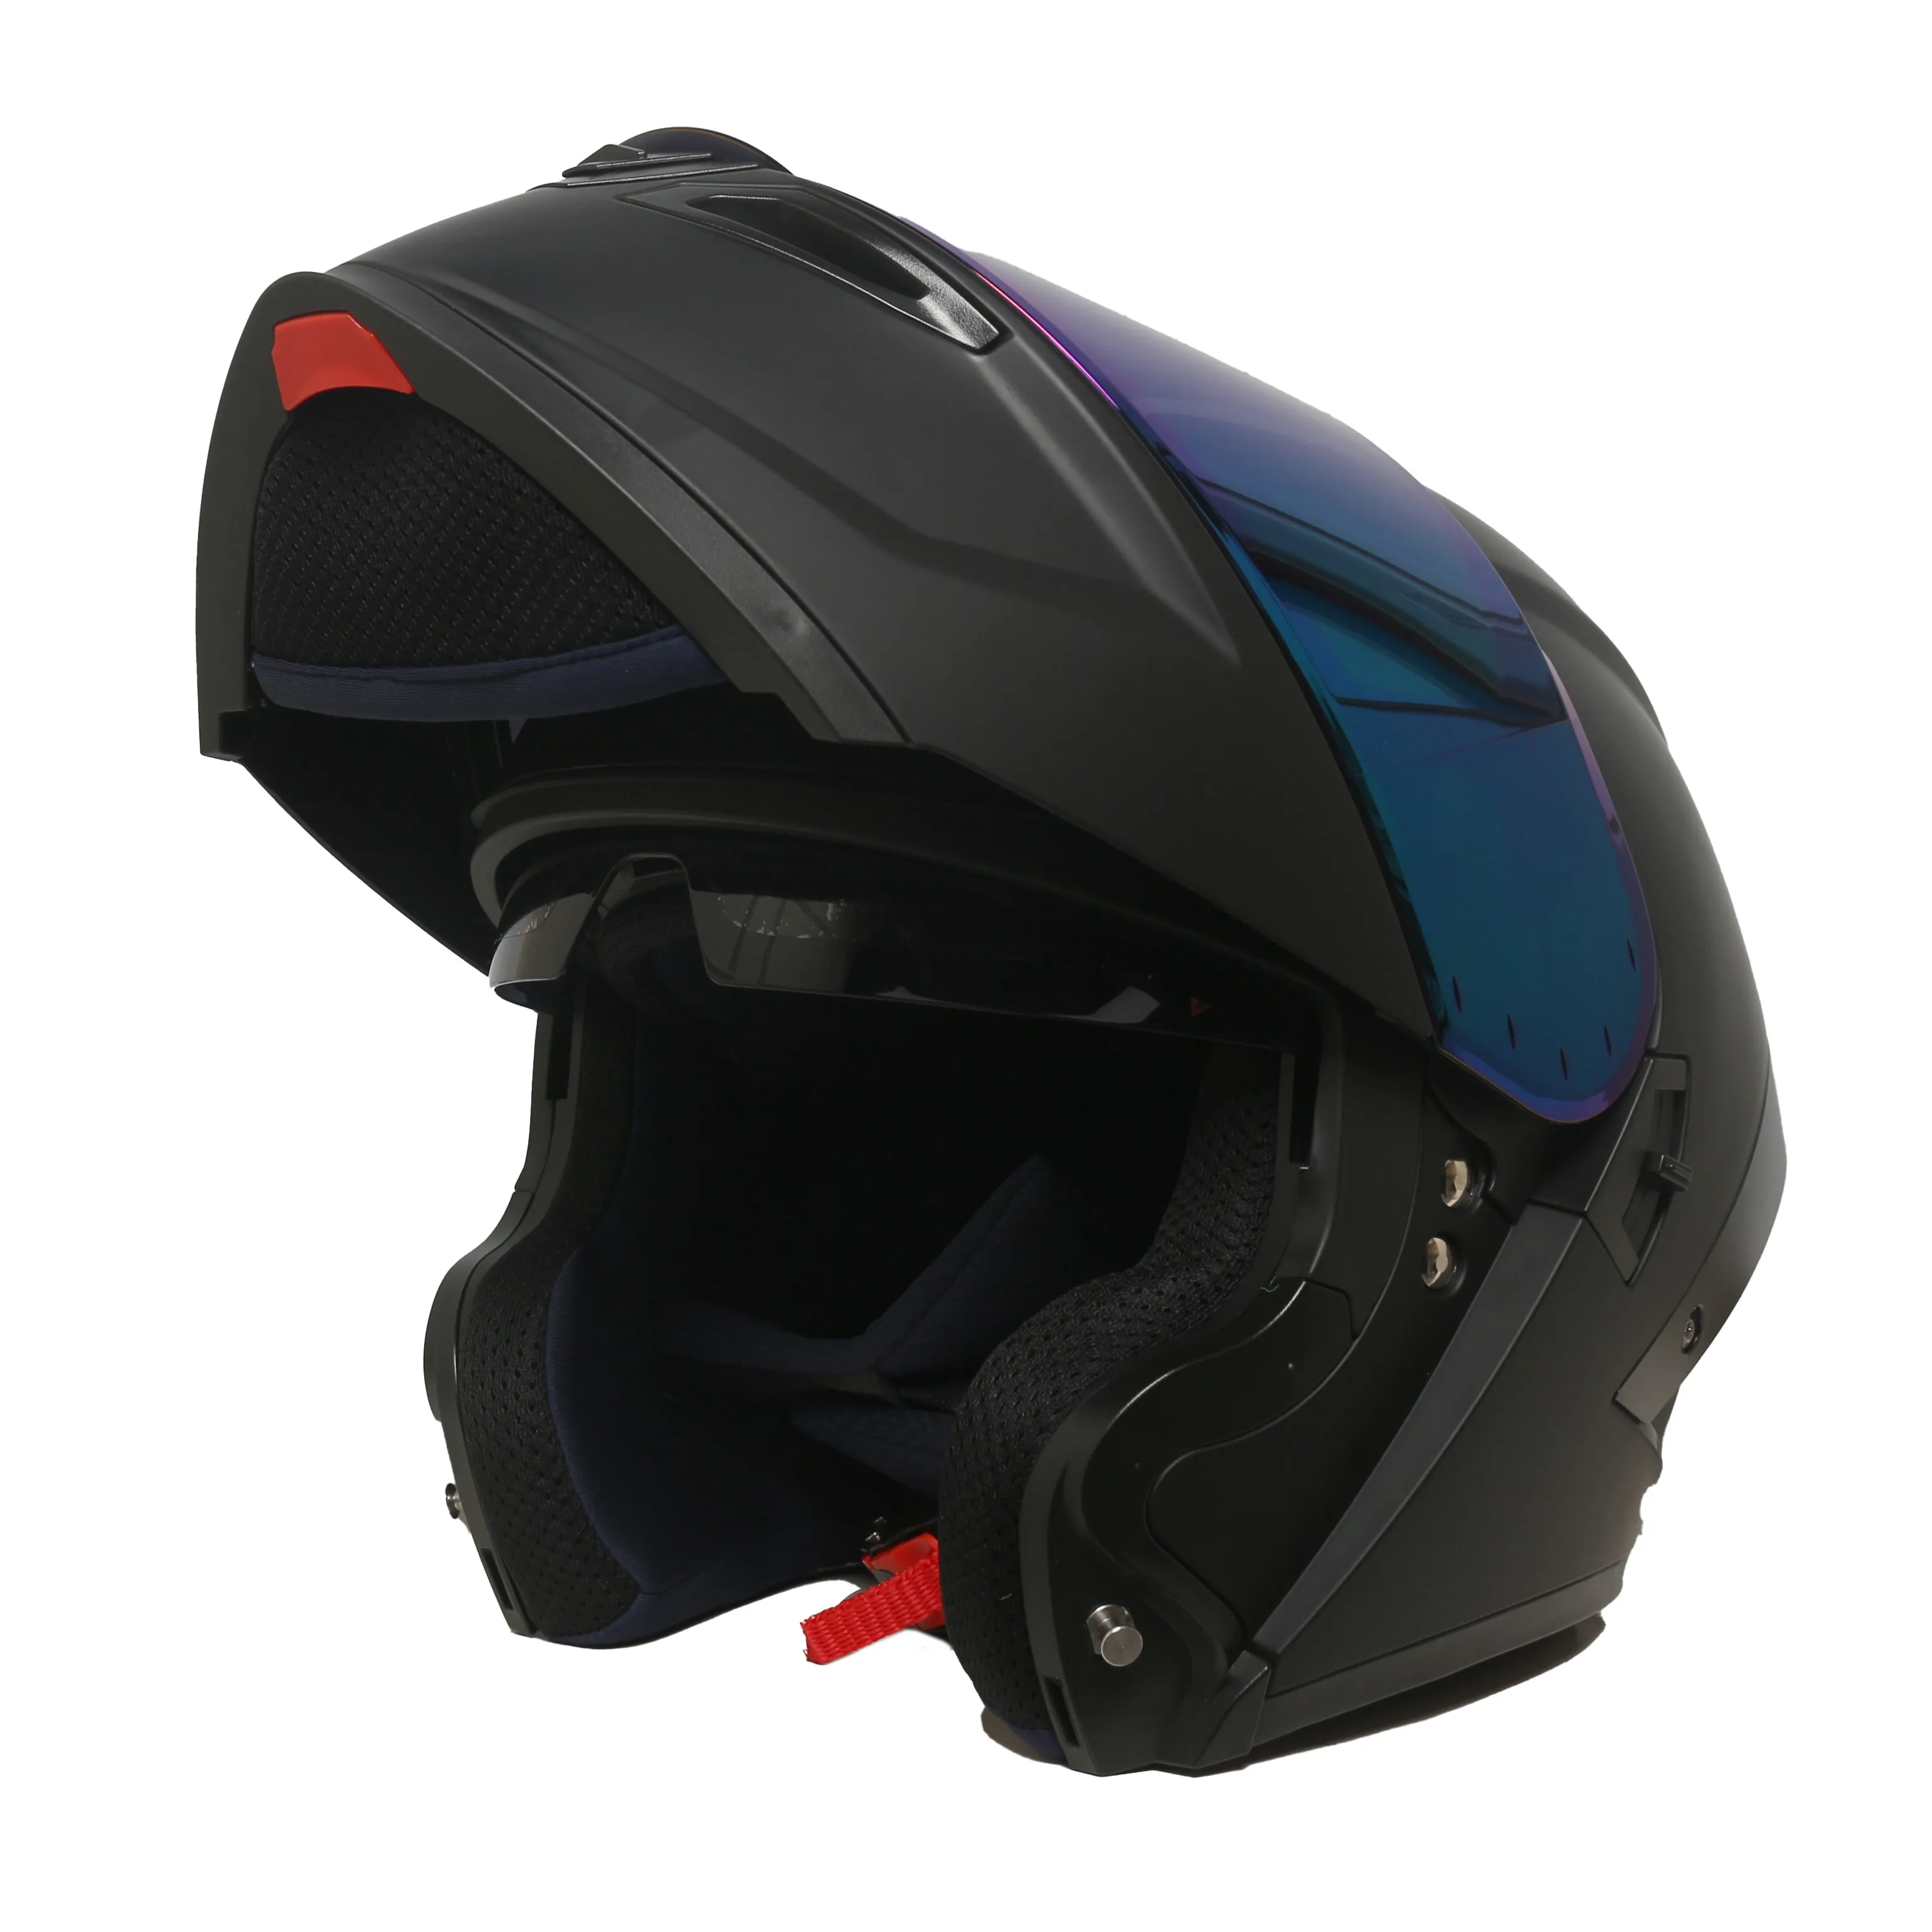 Yeni tasarım motosiklet ECE 22.06 sertifikası ile kaskları yukarı çevirmek motosiklet için kask yukarı çevirmek